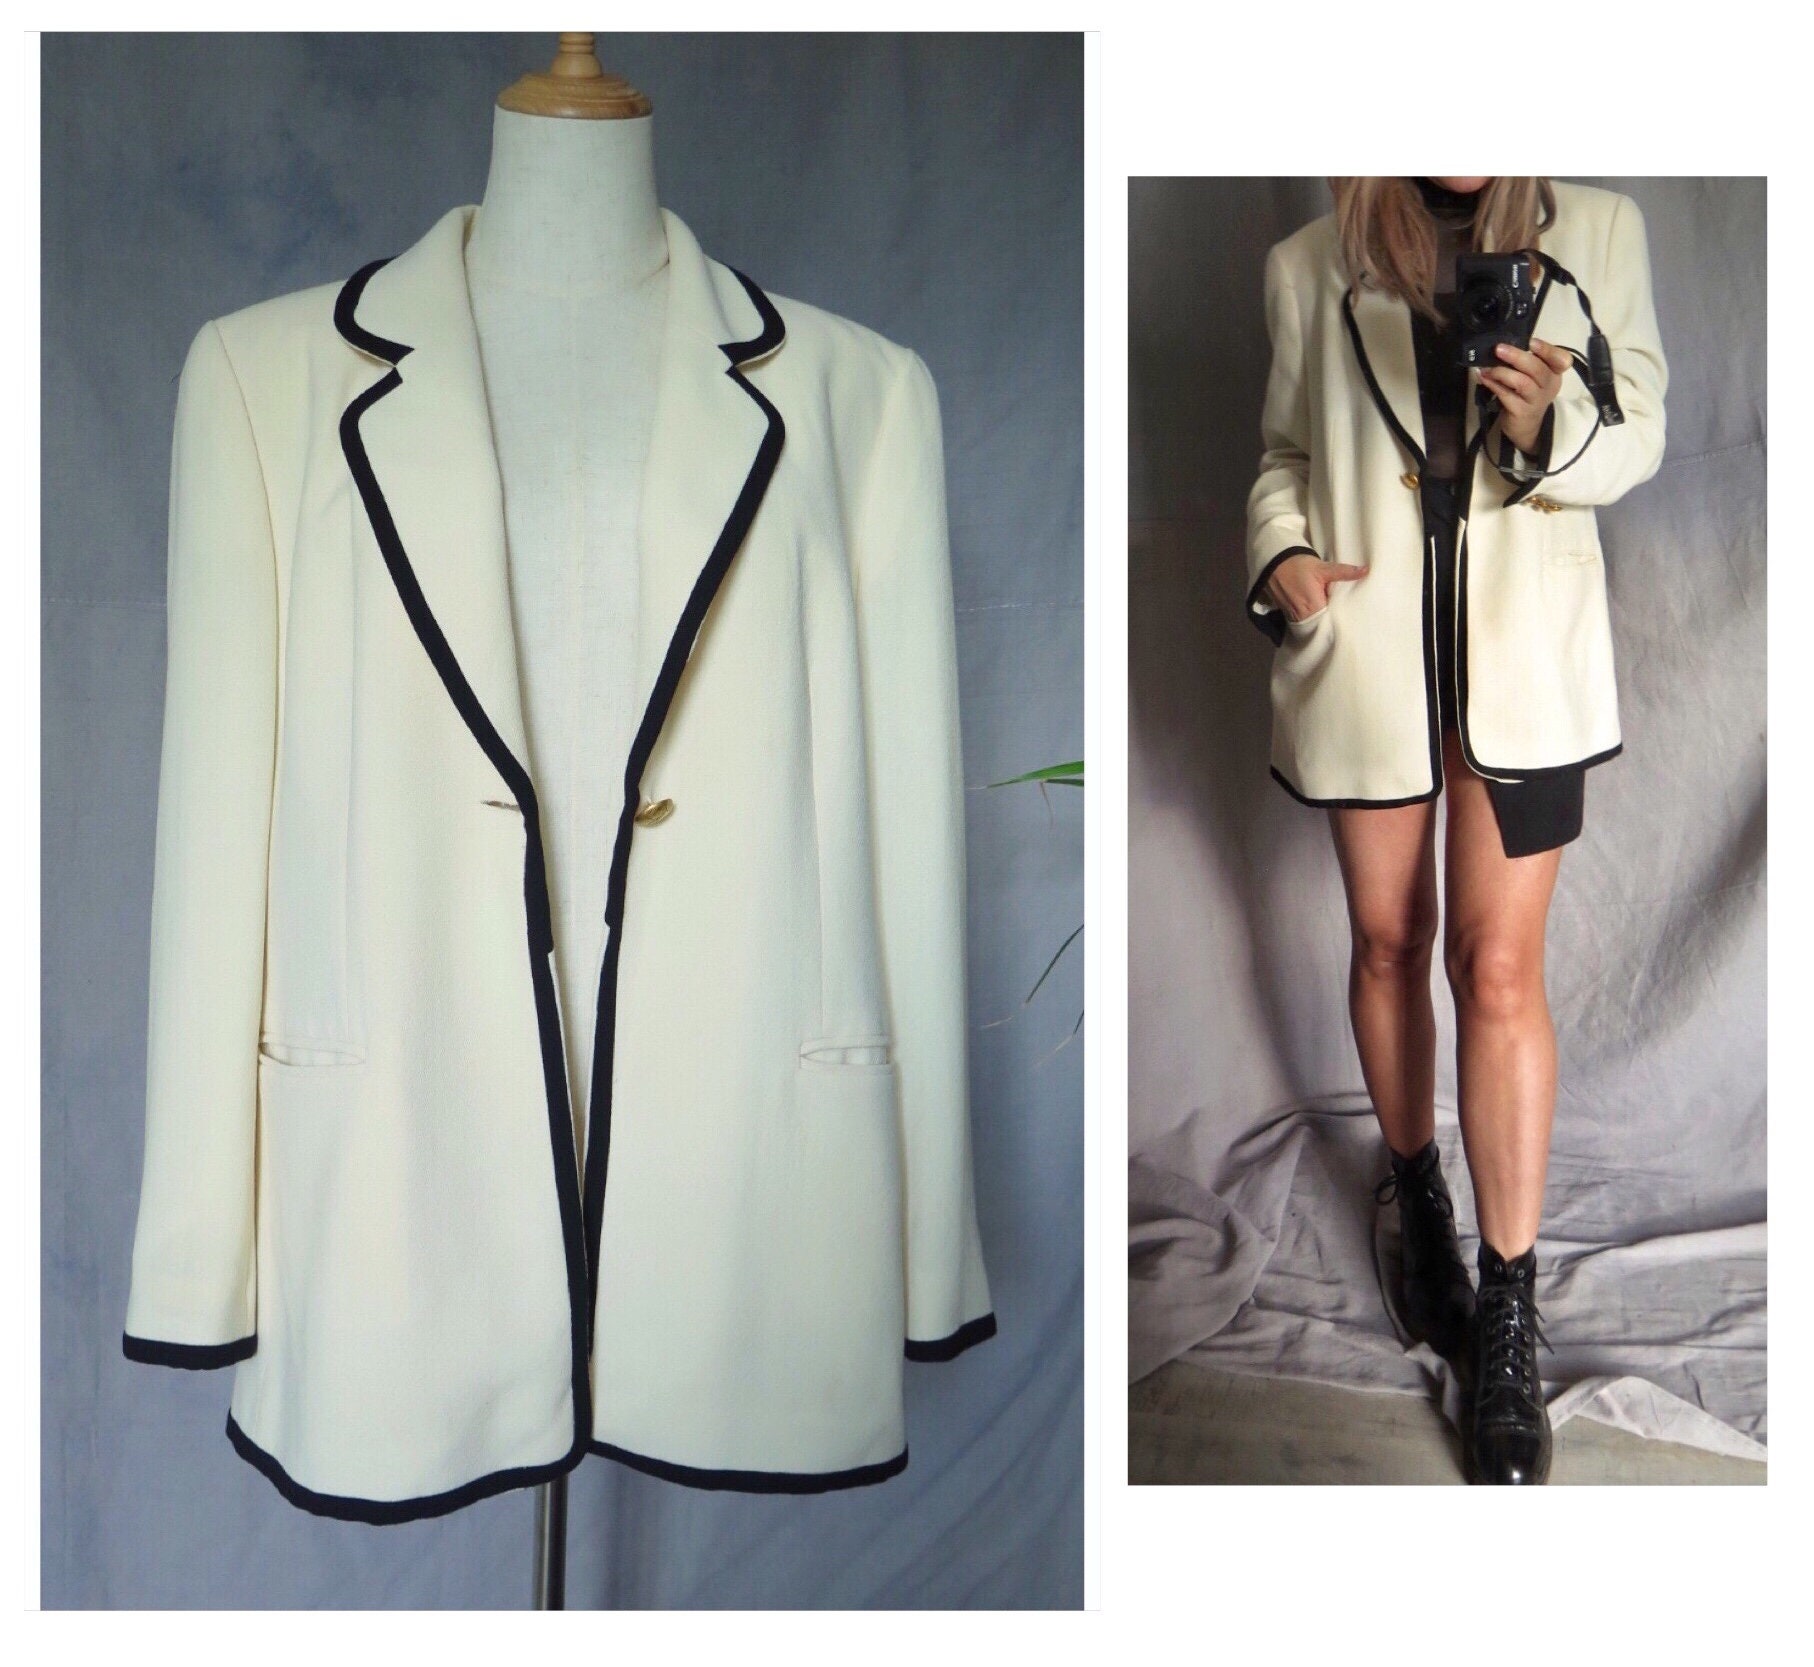 Wool suit jacket Louis Feraud Grey size 40 FR in Wool - 31270065